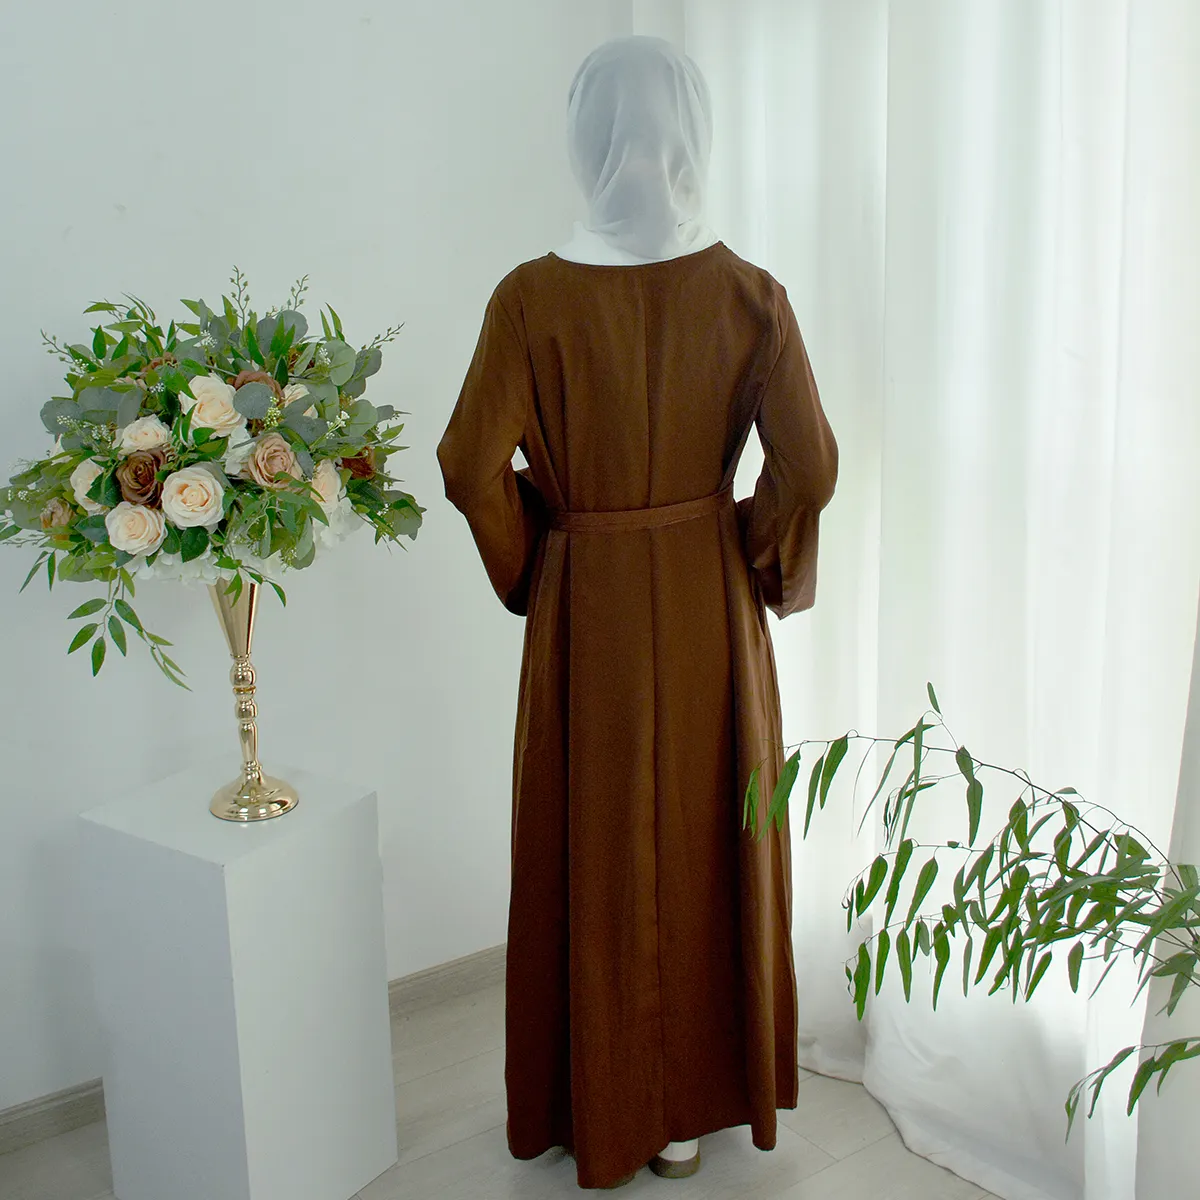 Baju hamil panjang untuk wanita, pakaian doa wisuda pernikahan perempuan Muslim putih